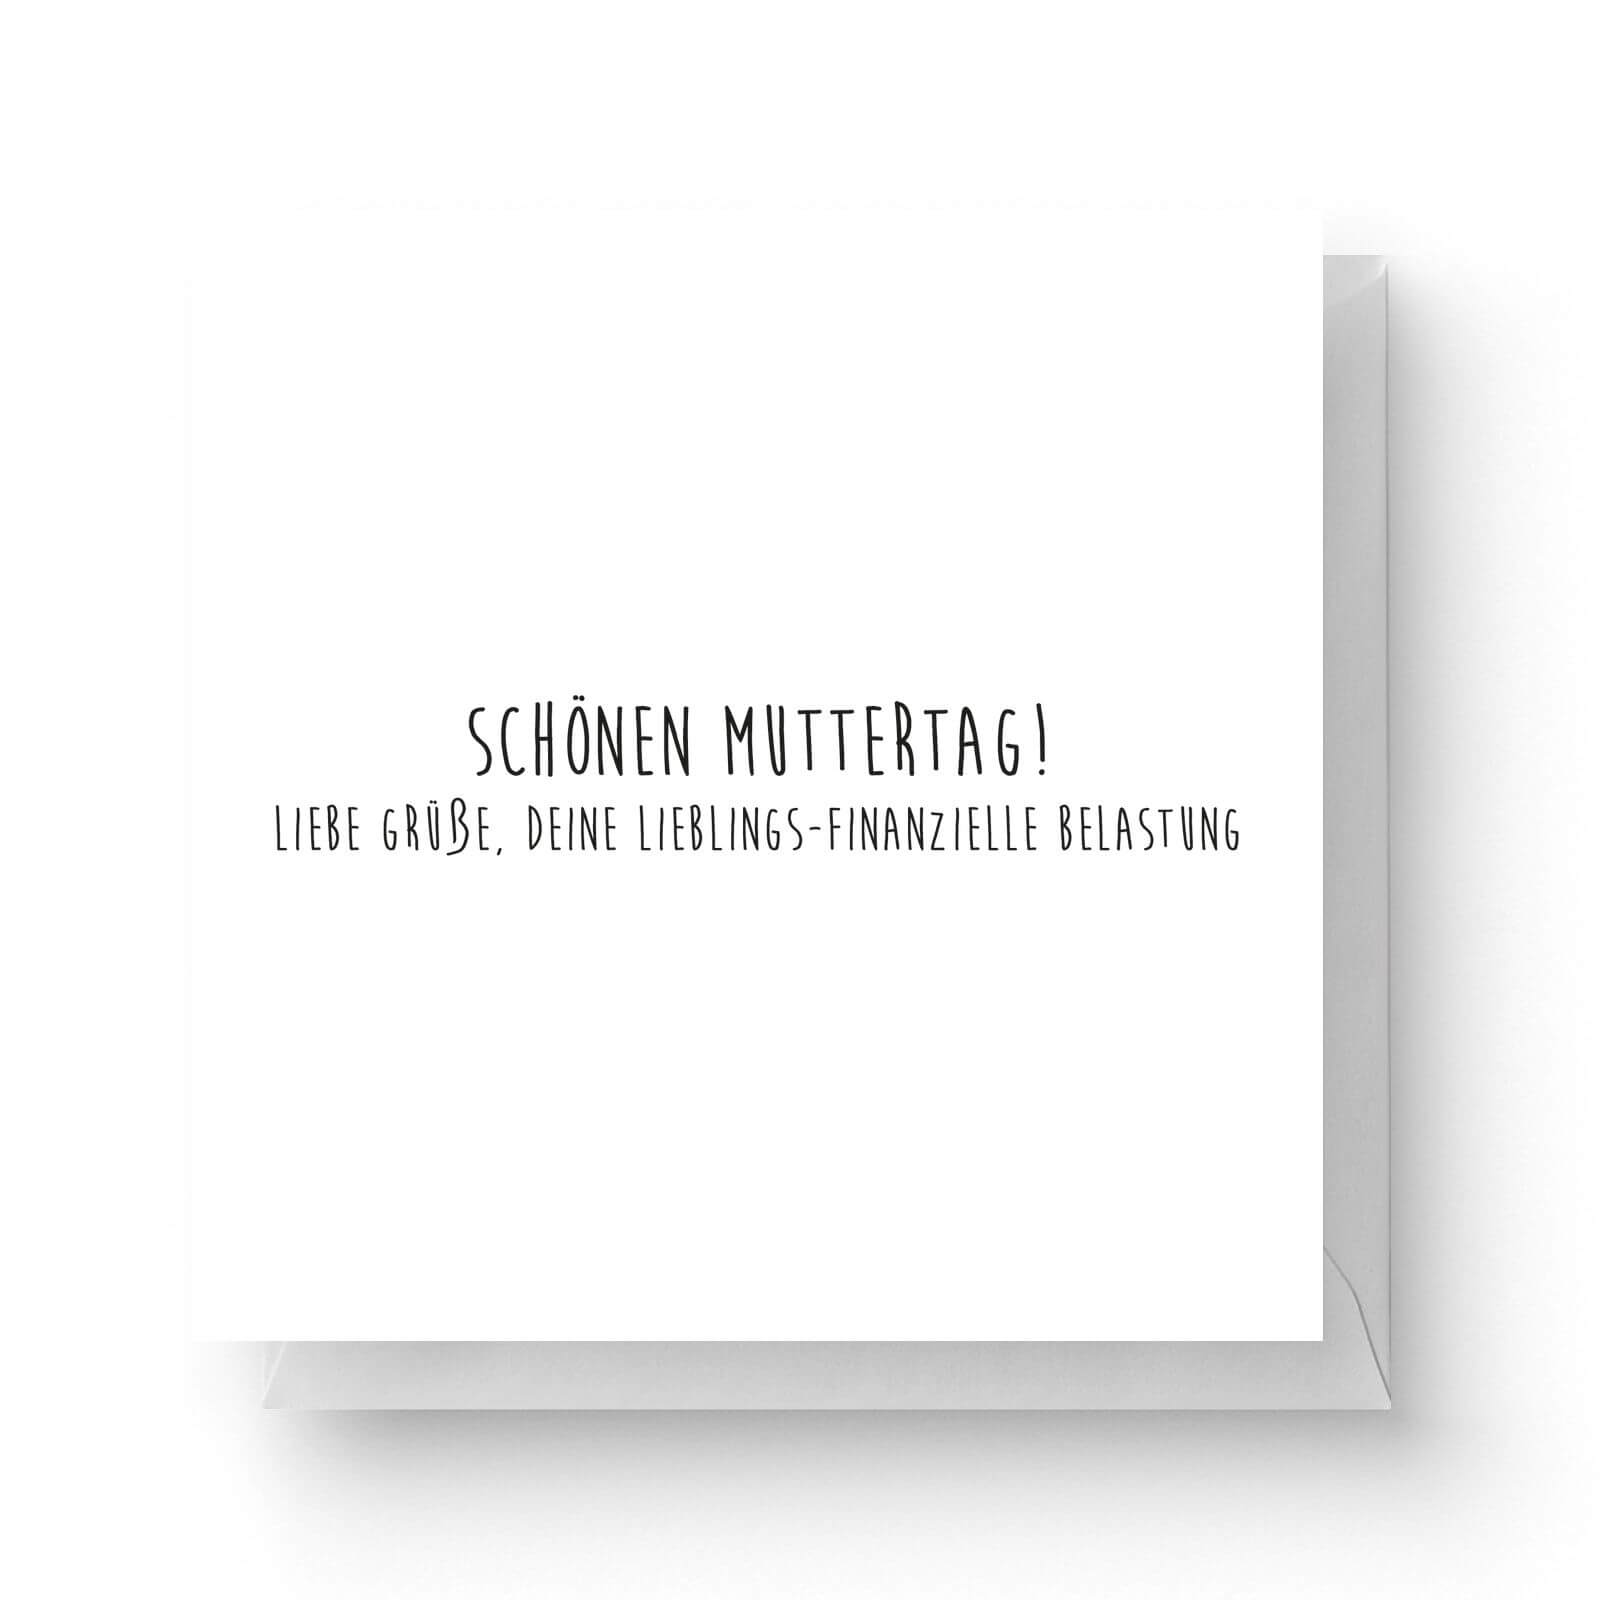 Image of Schönen Muttertag! Liebe Grüße, Deine Lieblings-finanzielle Belastung Square Greetings Card (14.8cm x 14.8cm)